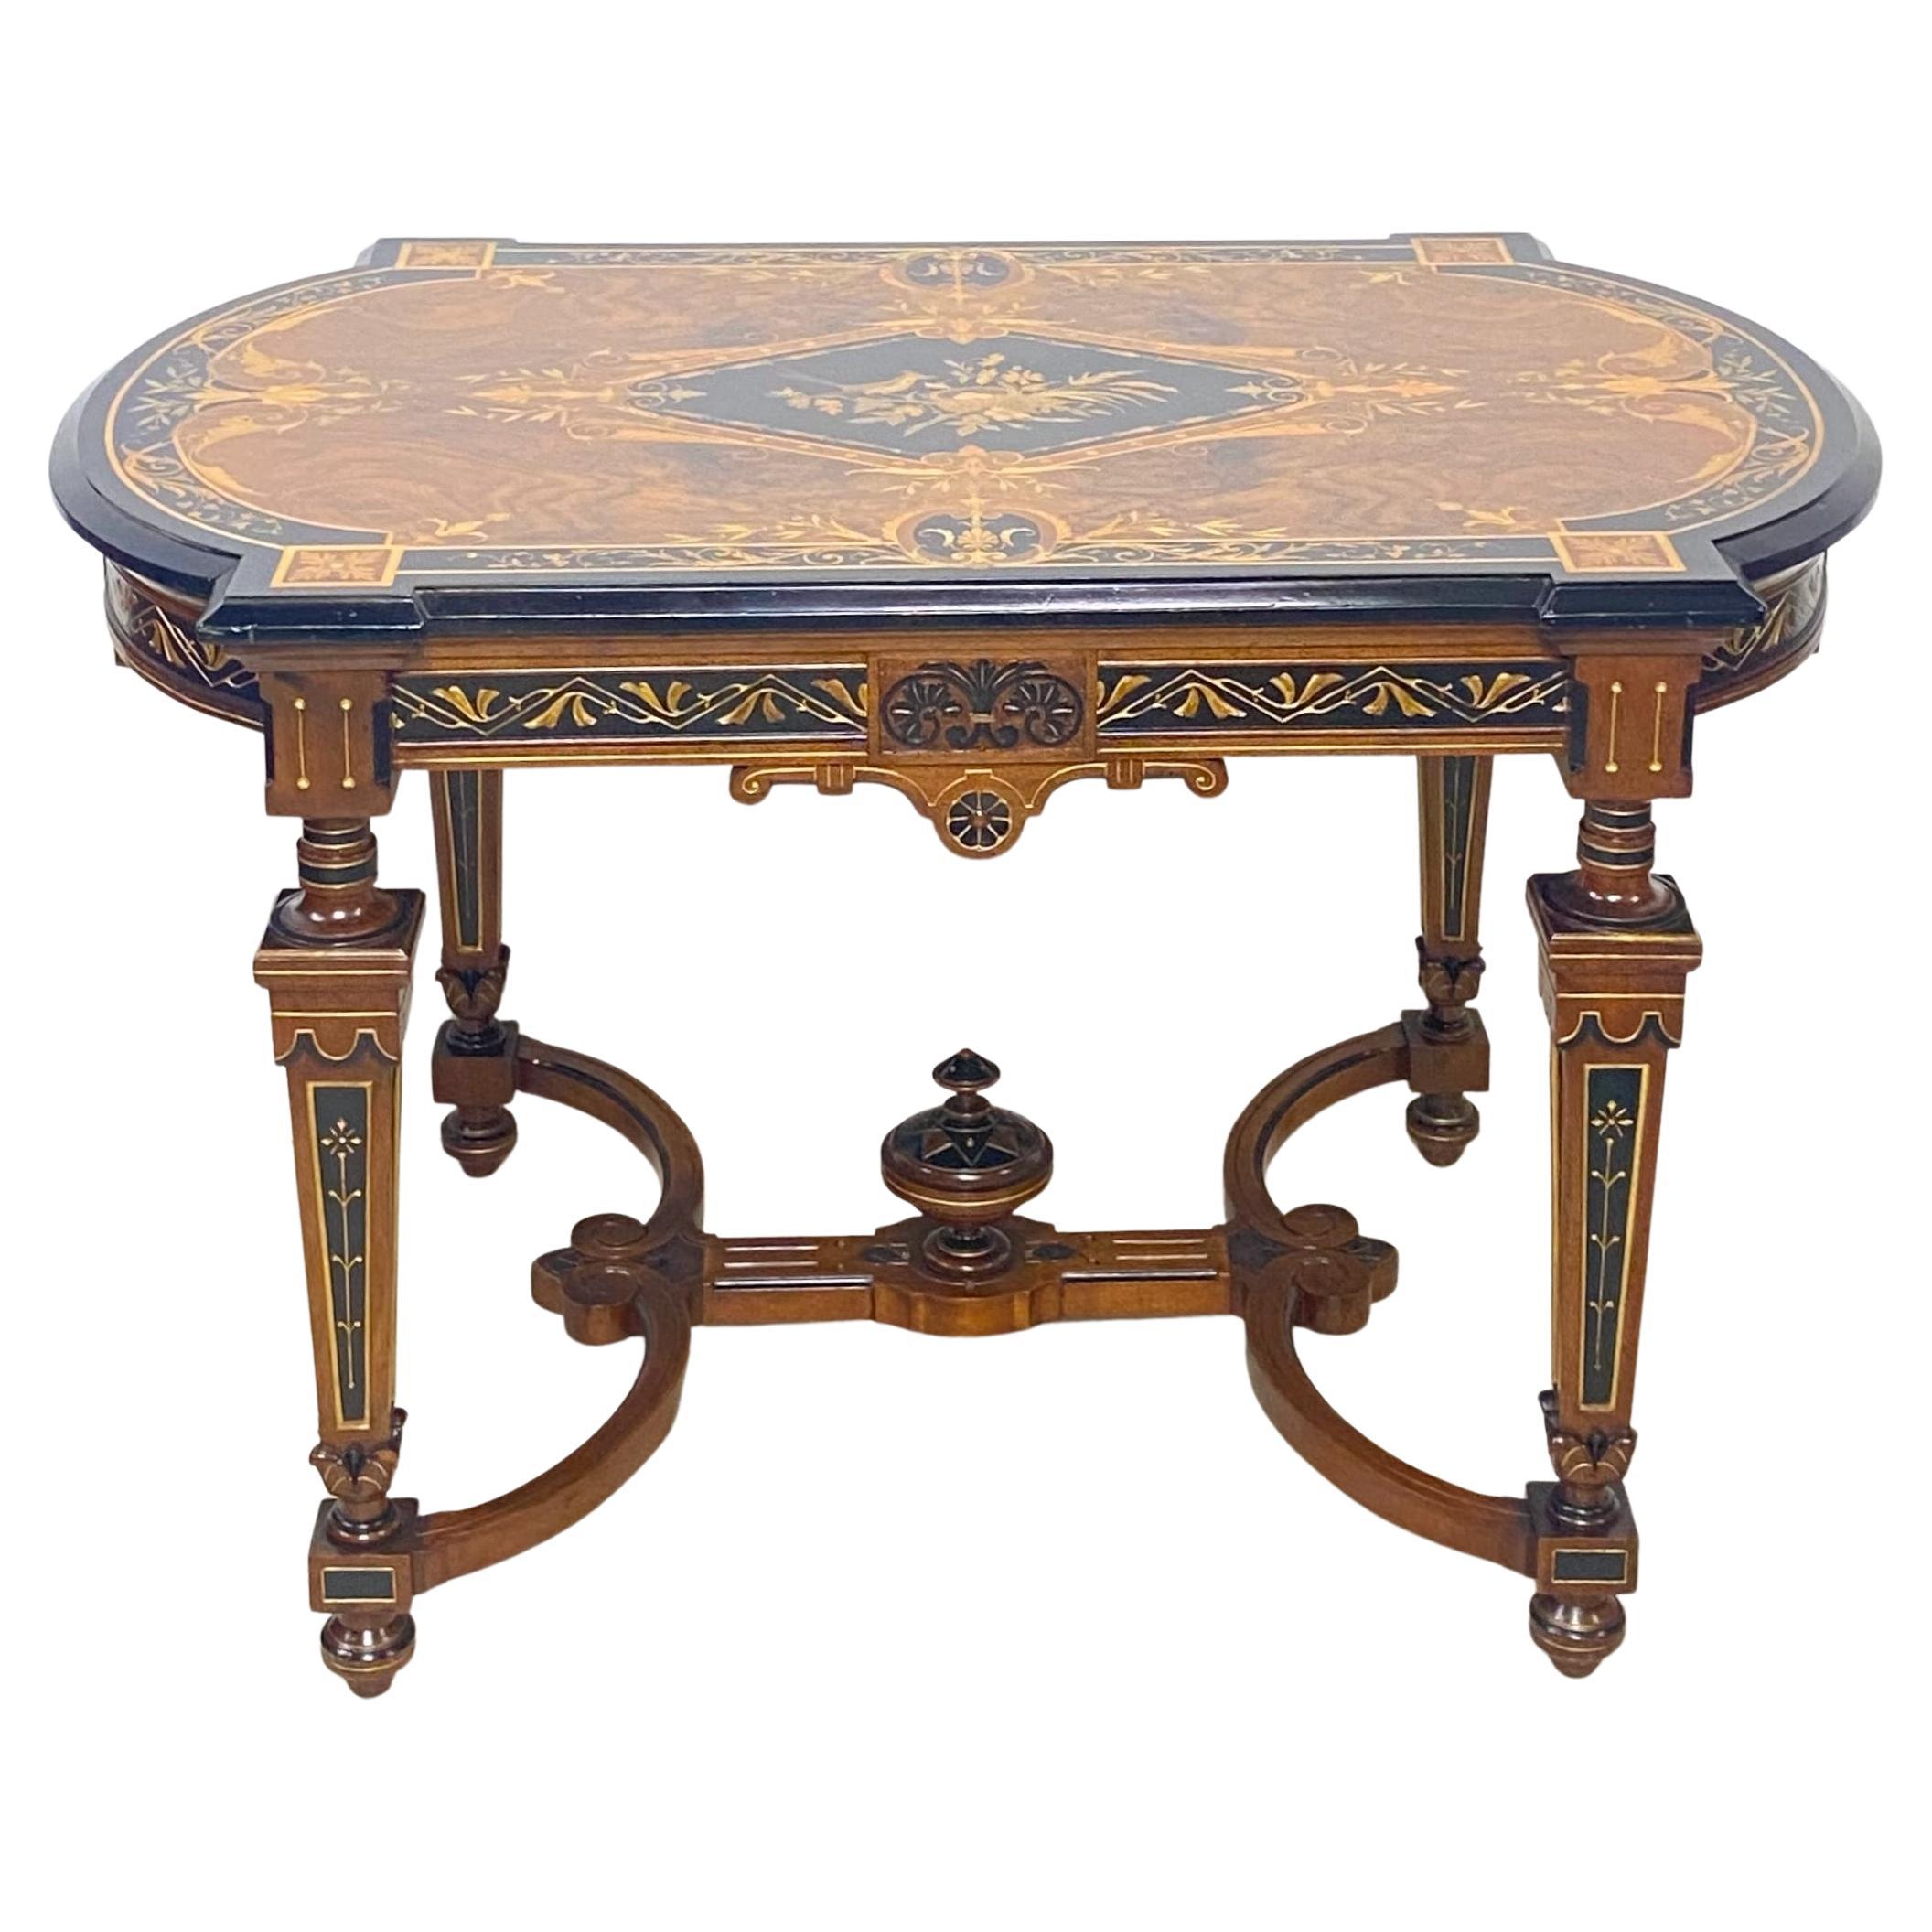 Herter Bros. américain victorien Table centrale de style, fin du 19e siècle